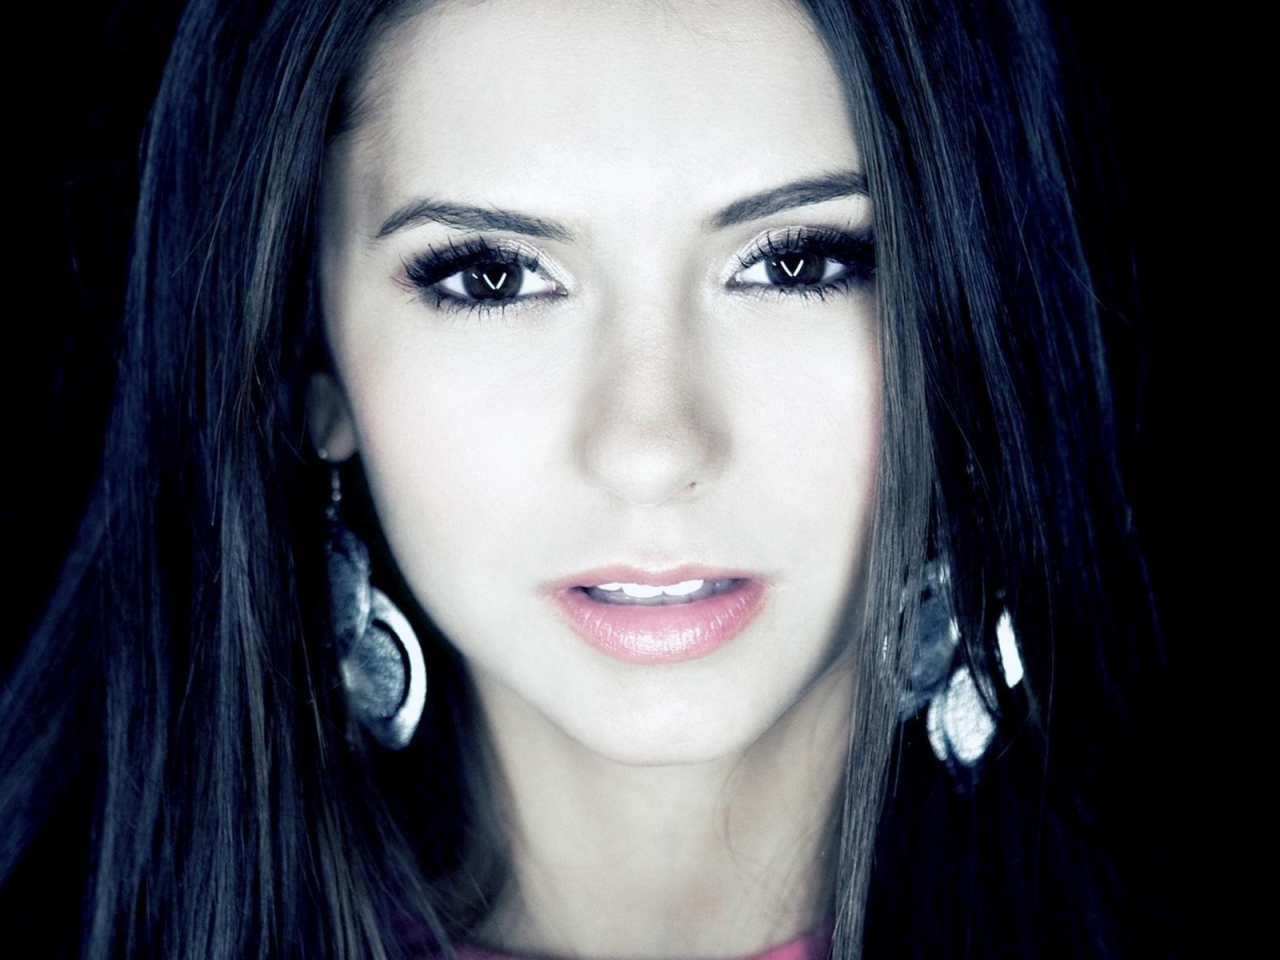 Nina Dobrev Face Close-Up for 1280 x 960 resolution